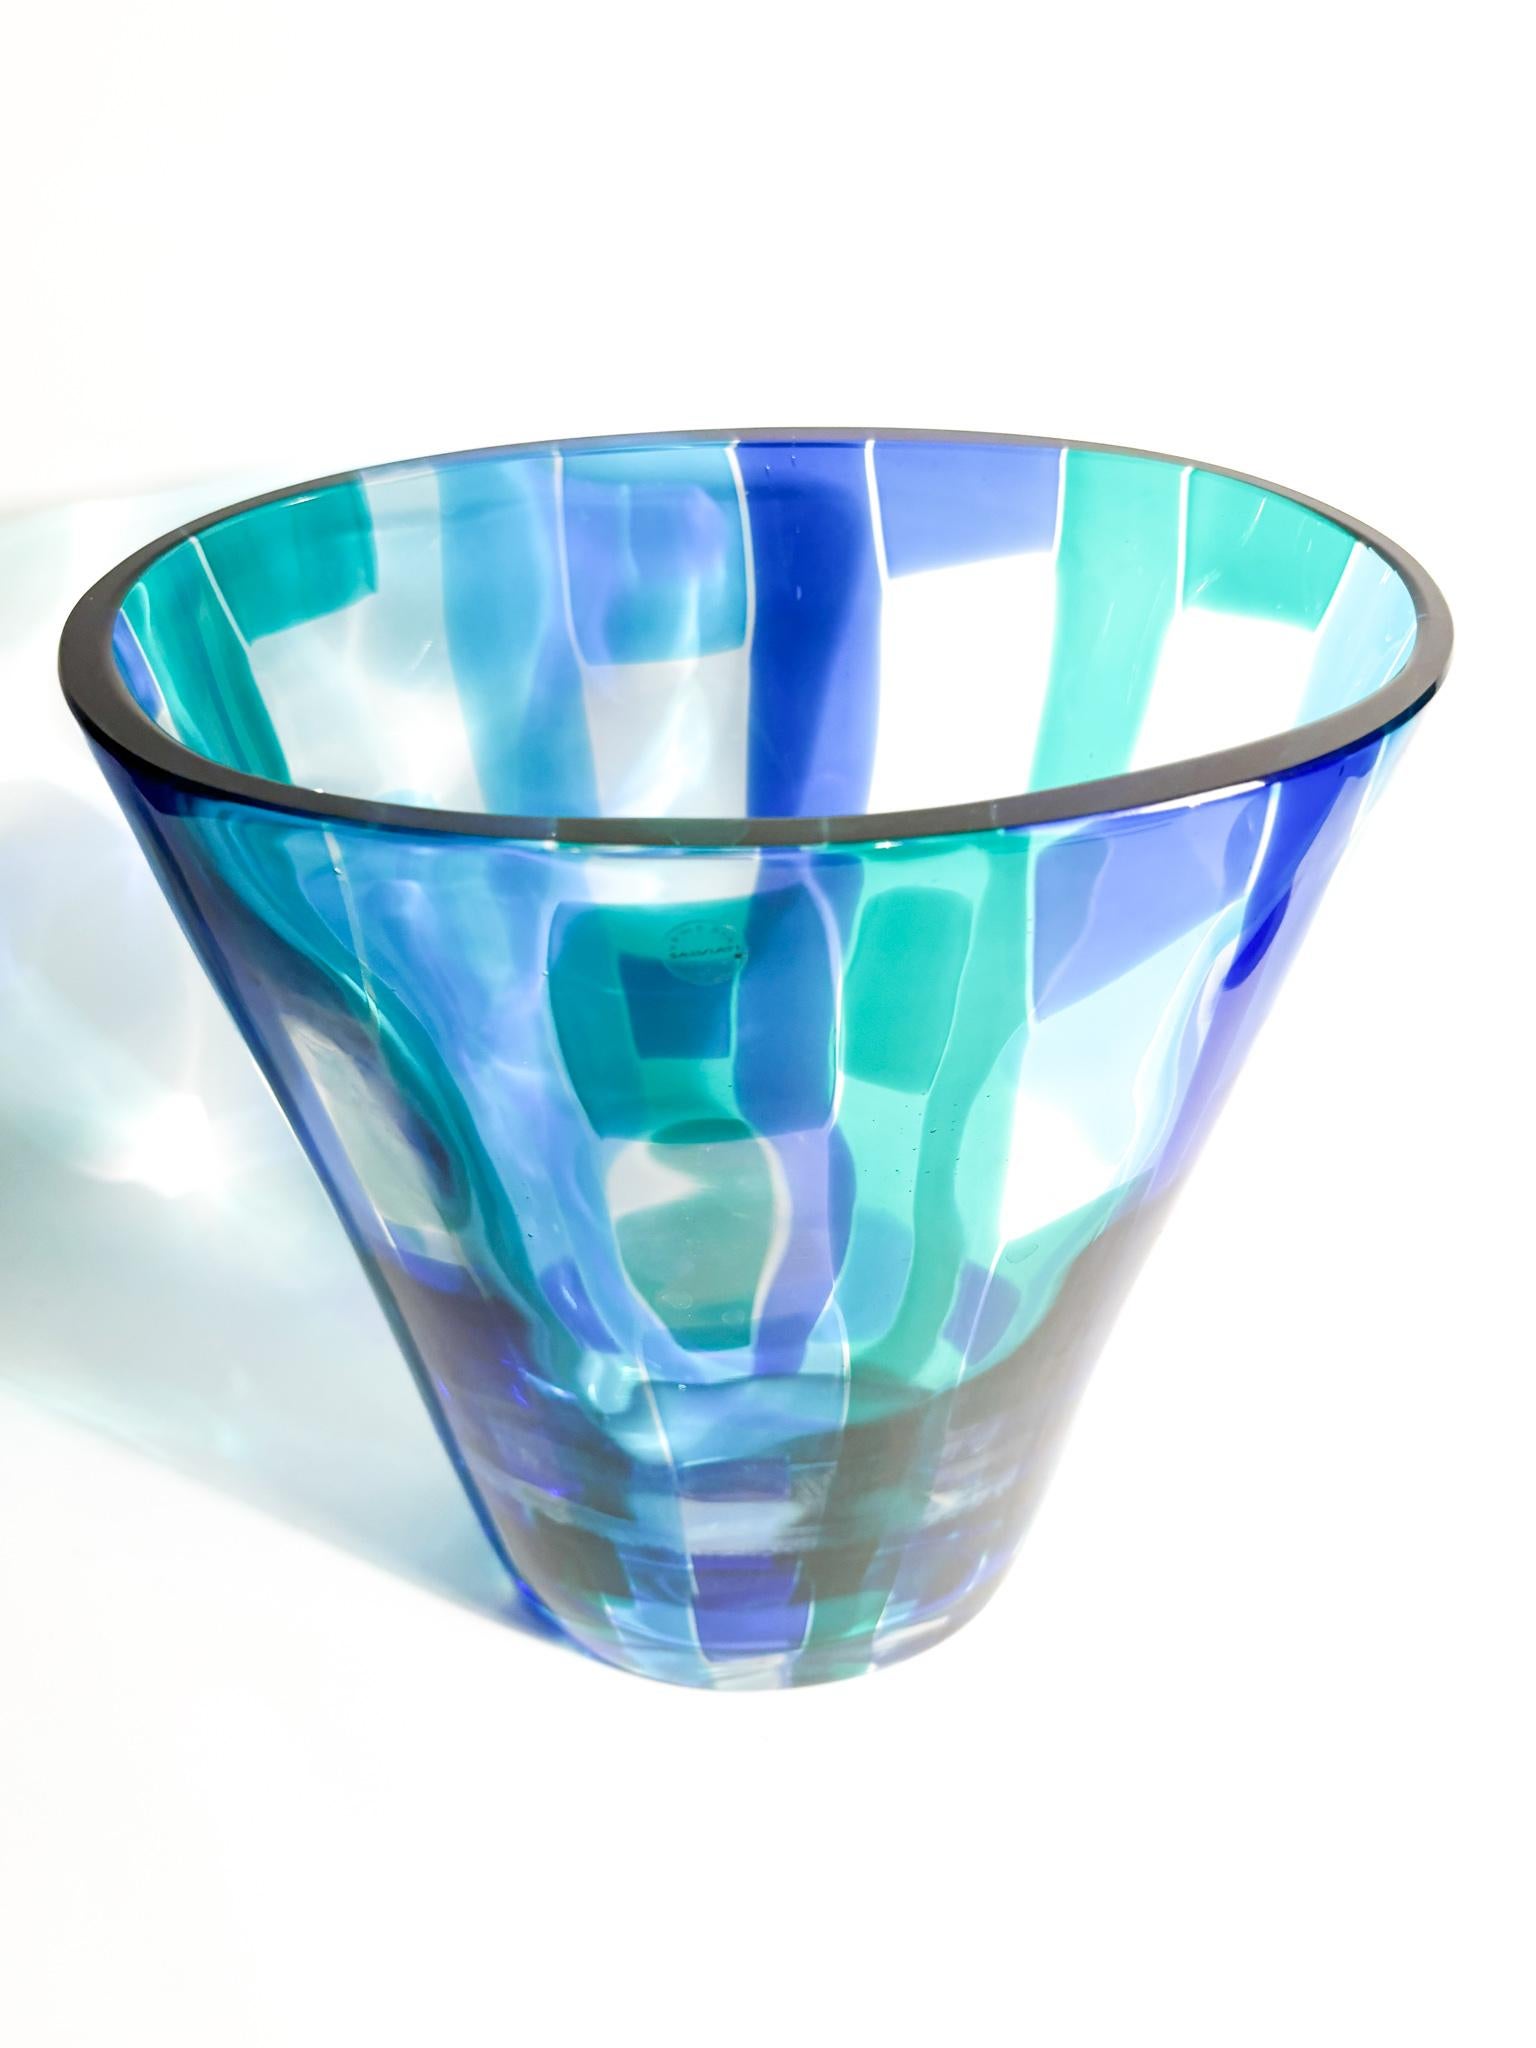 Salviati Murano Multicolored Glass Vase Madras model 1997 For Sale 1